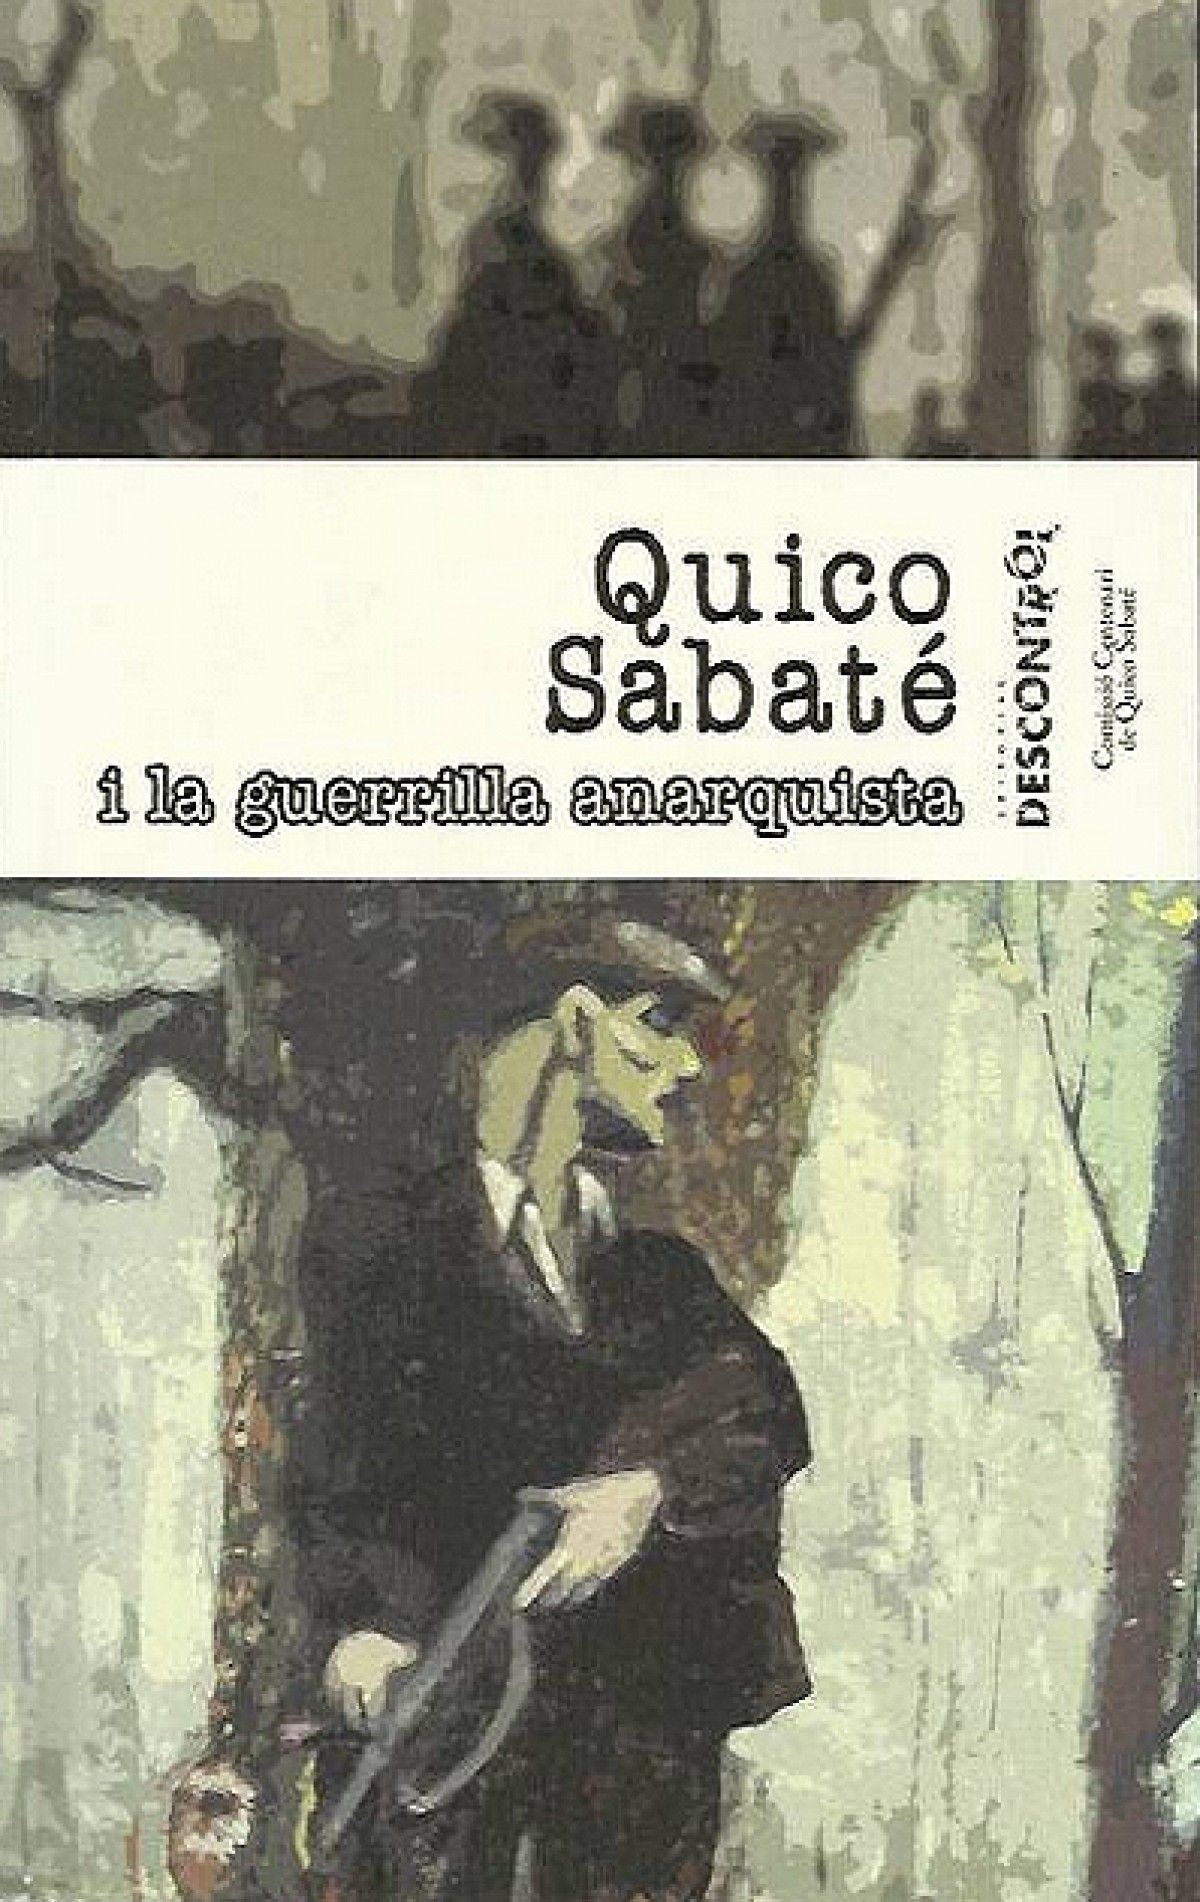 Portada del llibre «Quico Sabaté i la guerrilla anarquista (1939-1960)»